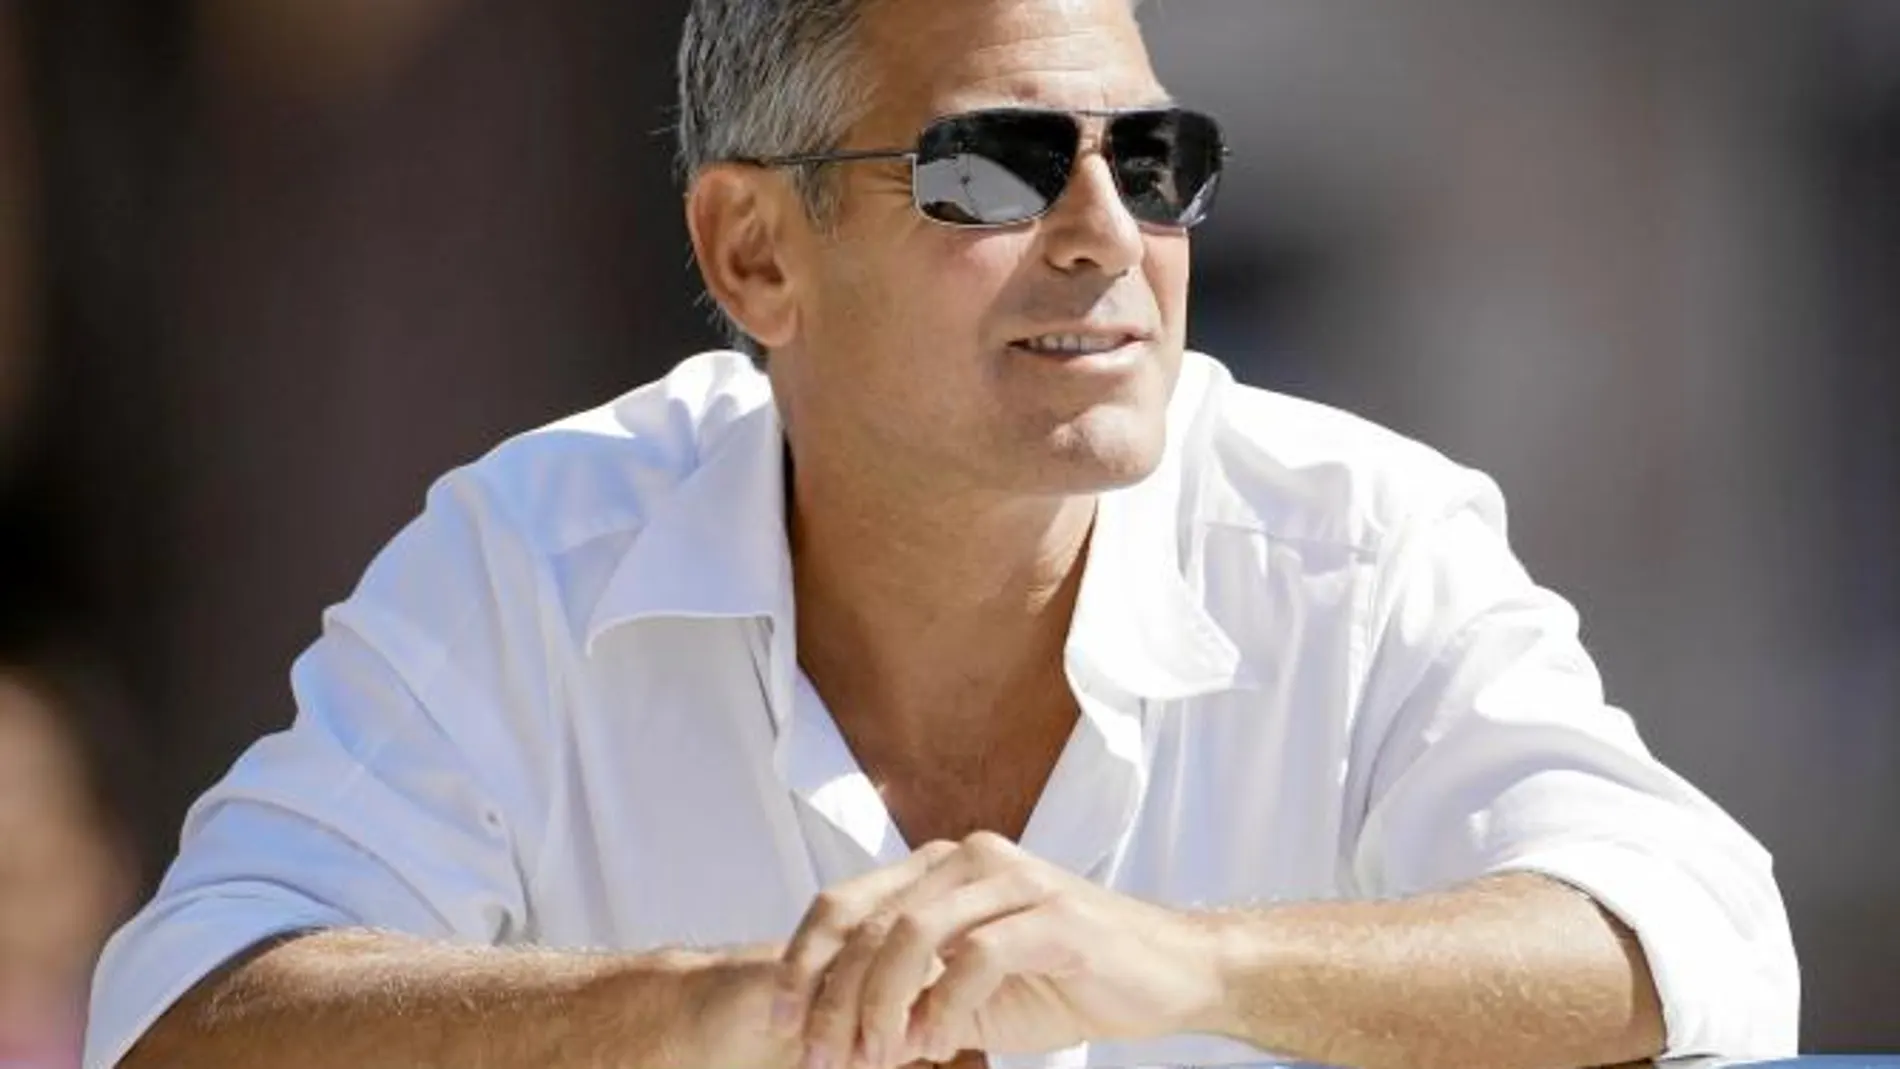 George Clooney ha vuelto a convertirse en el soltero de oro